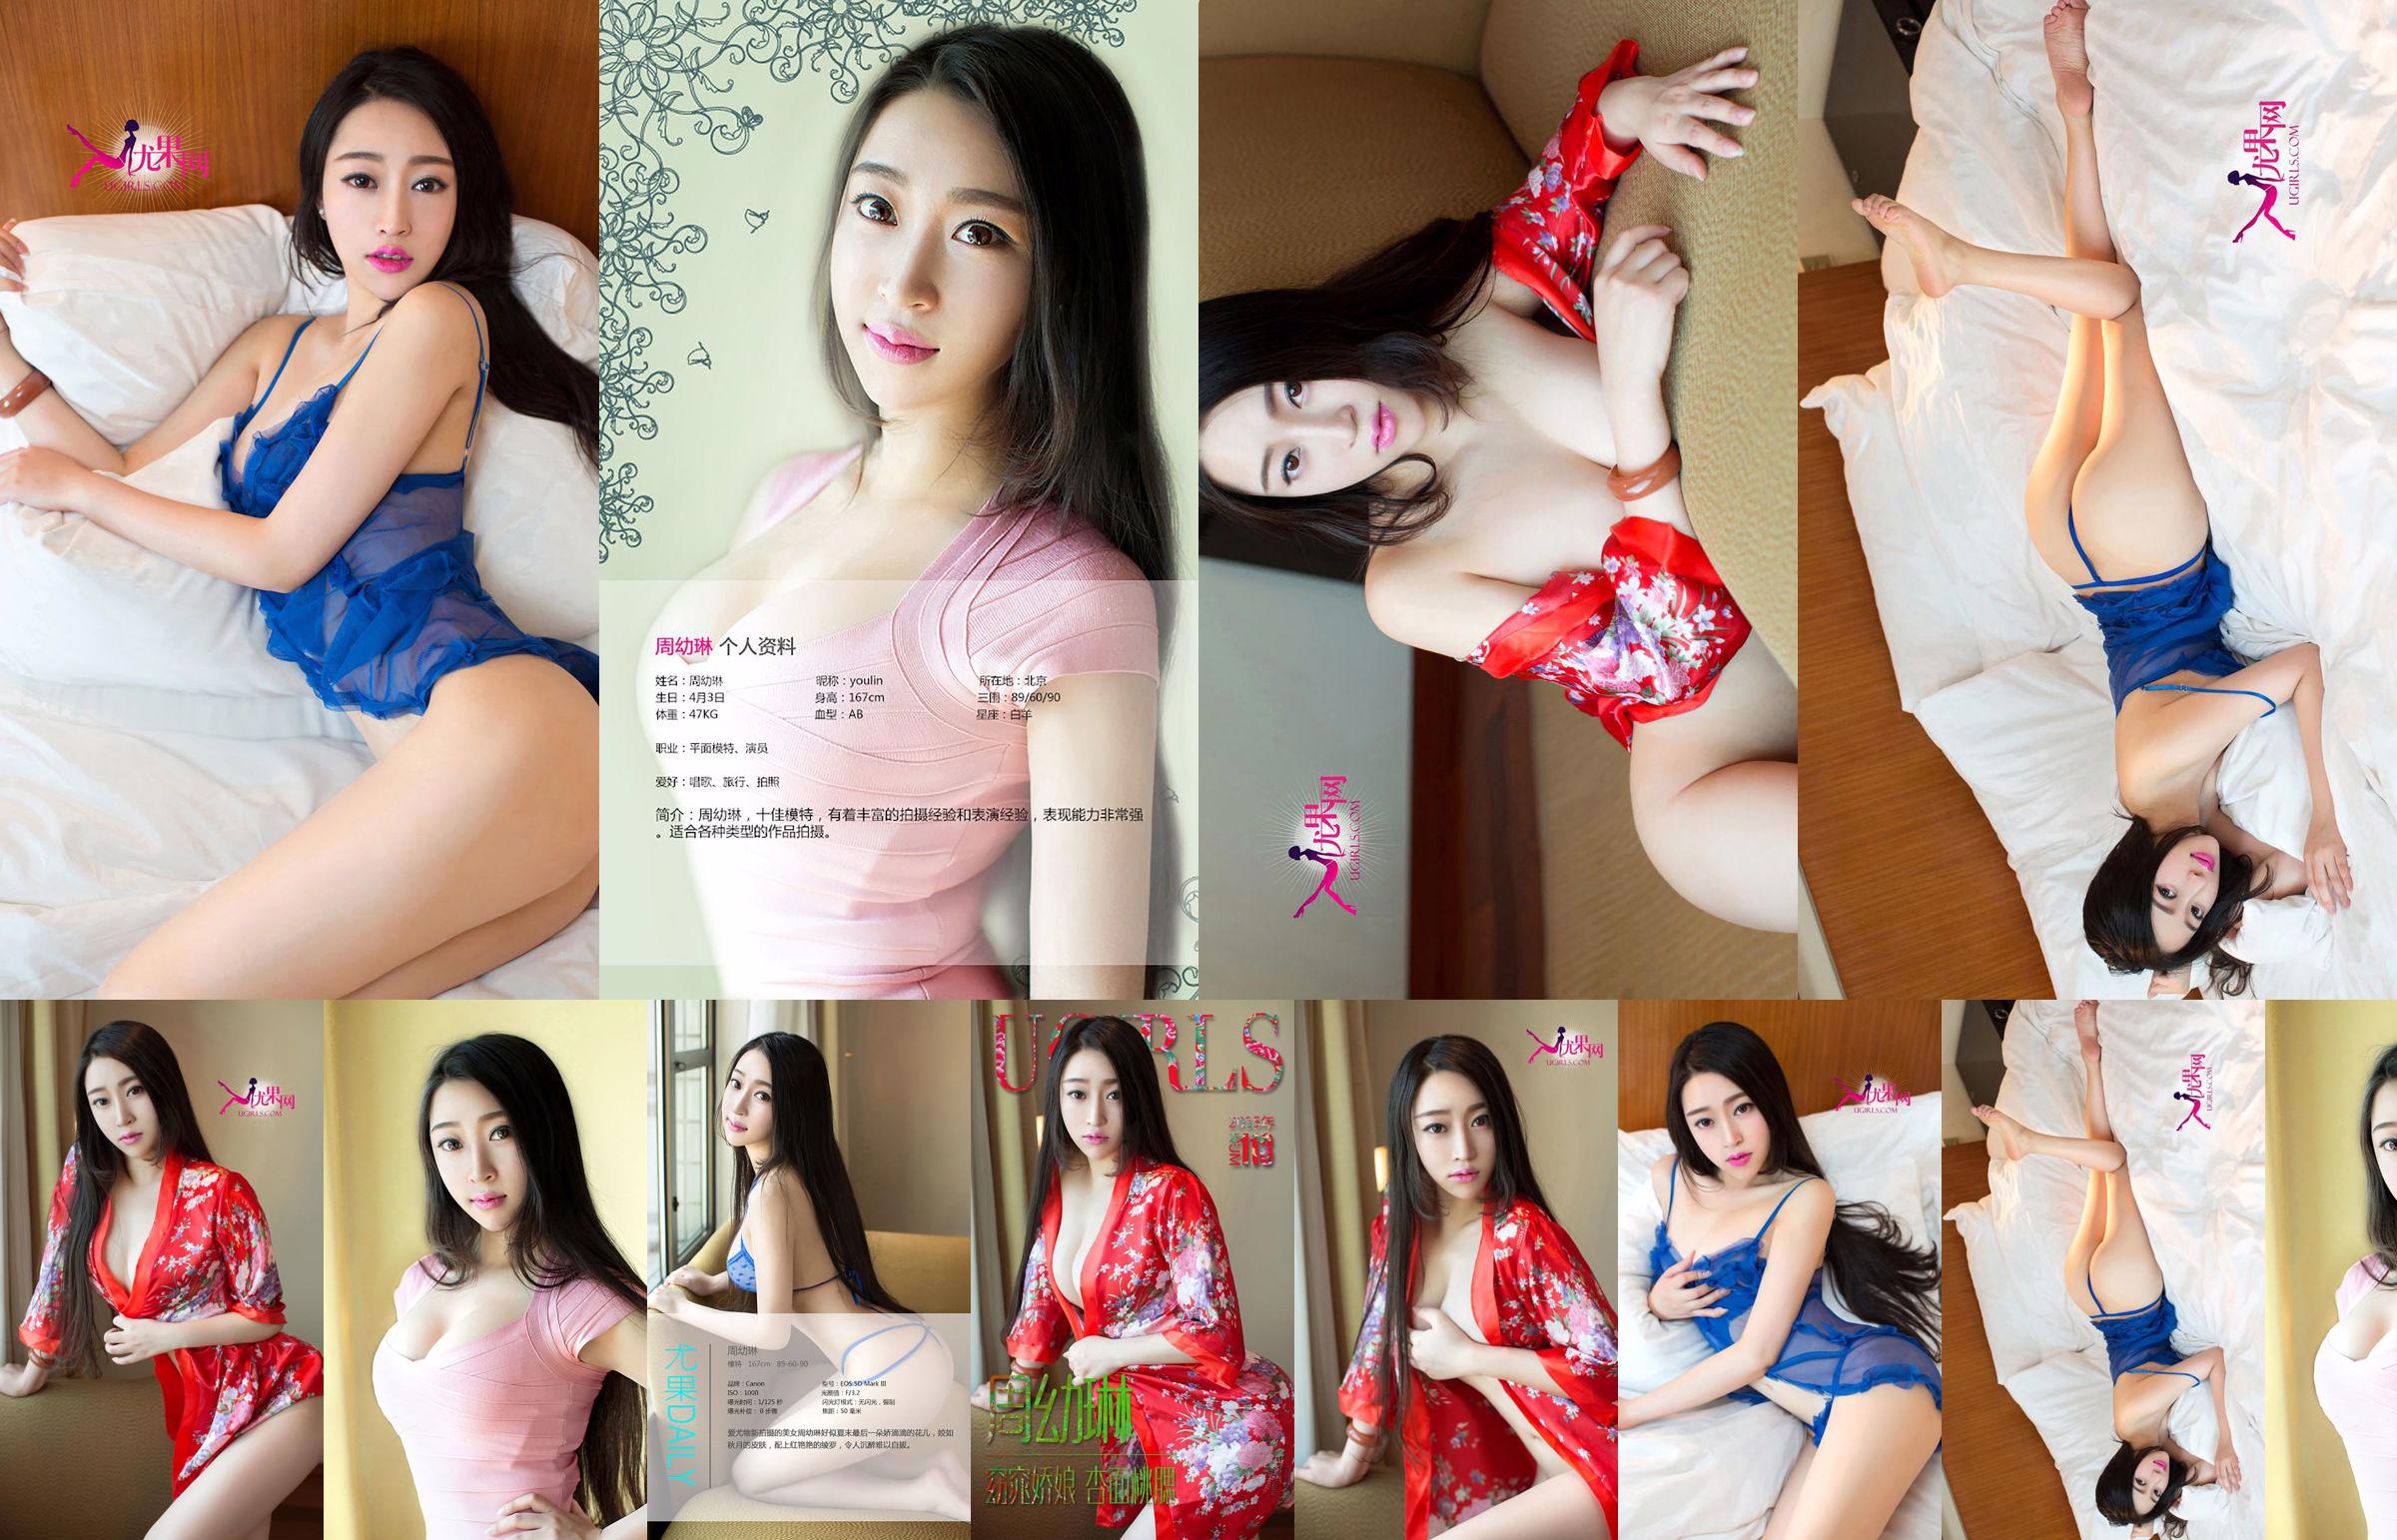 Zhou Youlin "Một cô gái xinh đẹp với khuôn mặt hoa mai và đôi má đào" [Love Youwu Ugirls] No.113 No.f74b08 Trang 1